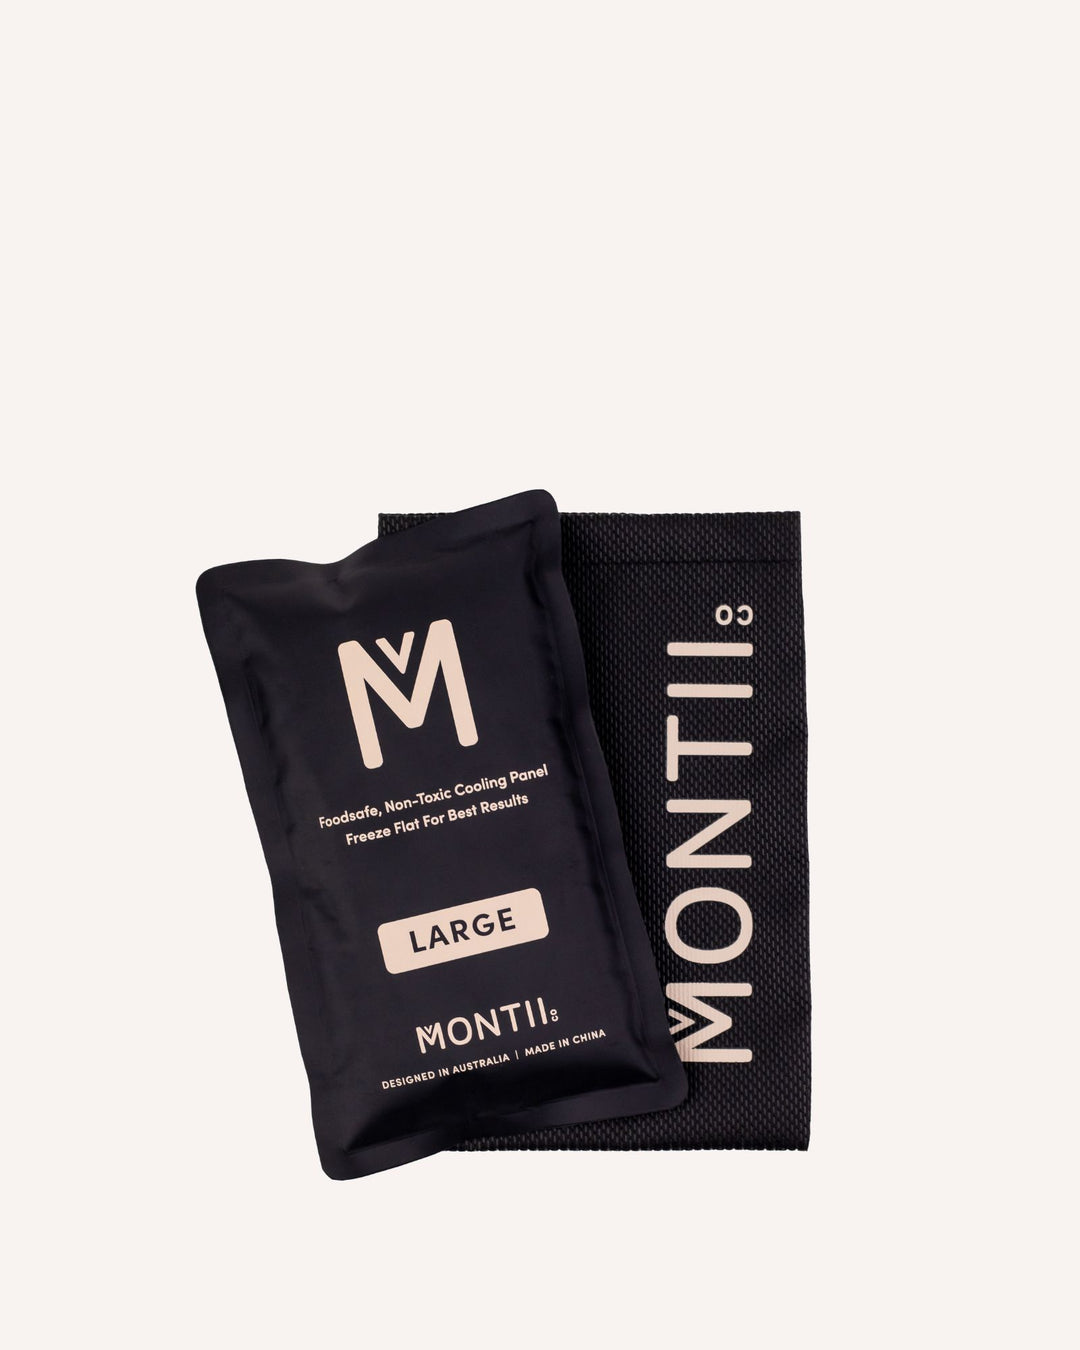 MontiiCo Large Lunch Bag and Bottle Set - Unicorn Magic